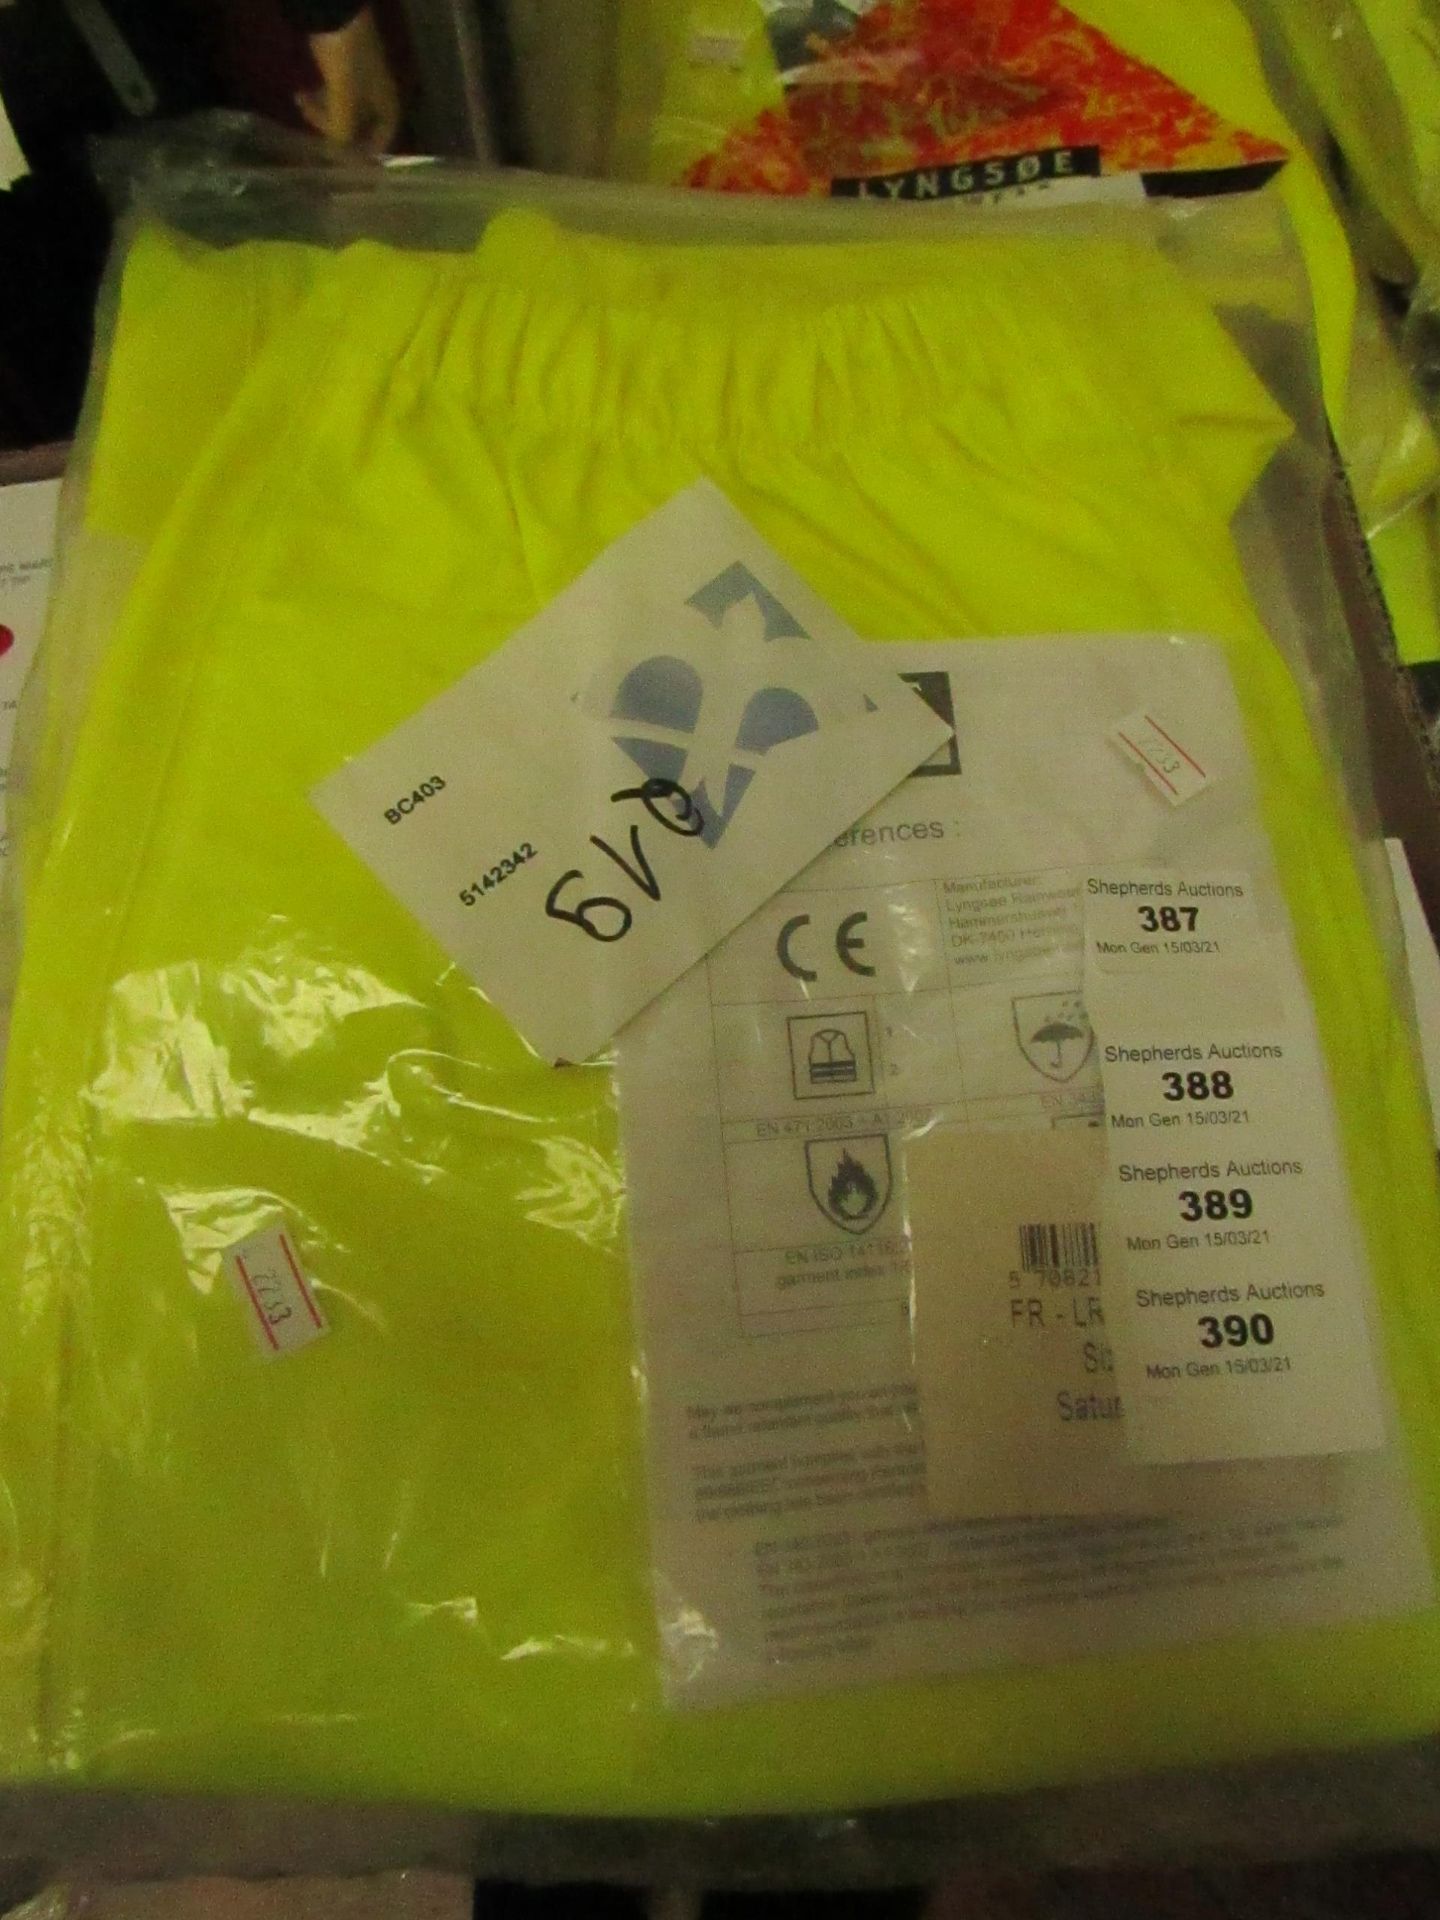 Lyngsoe Rainwear - Microflex Hi-Vis Yellow Trousers - Size XL - New & Packaged.